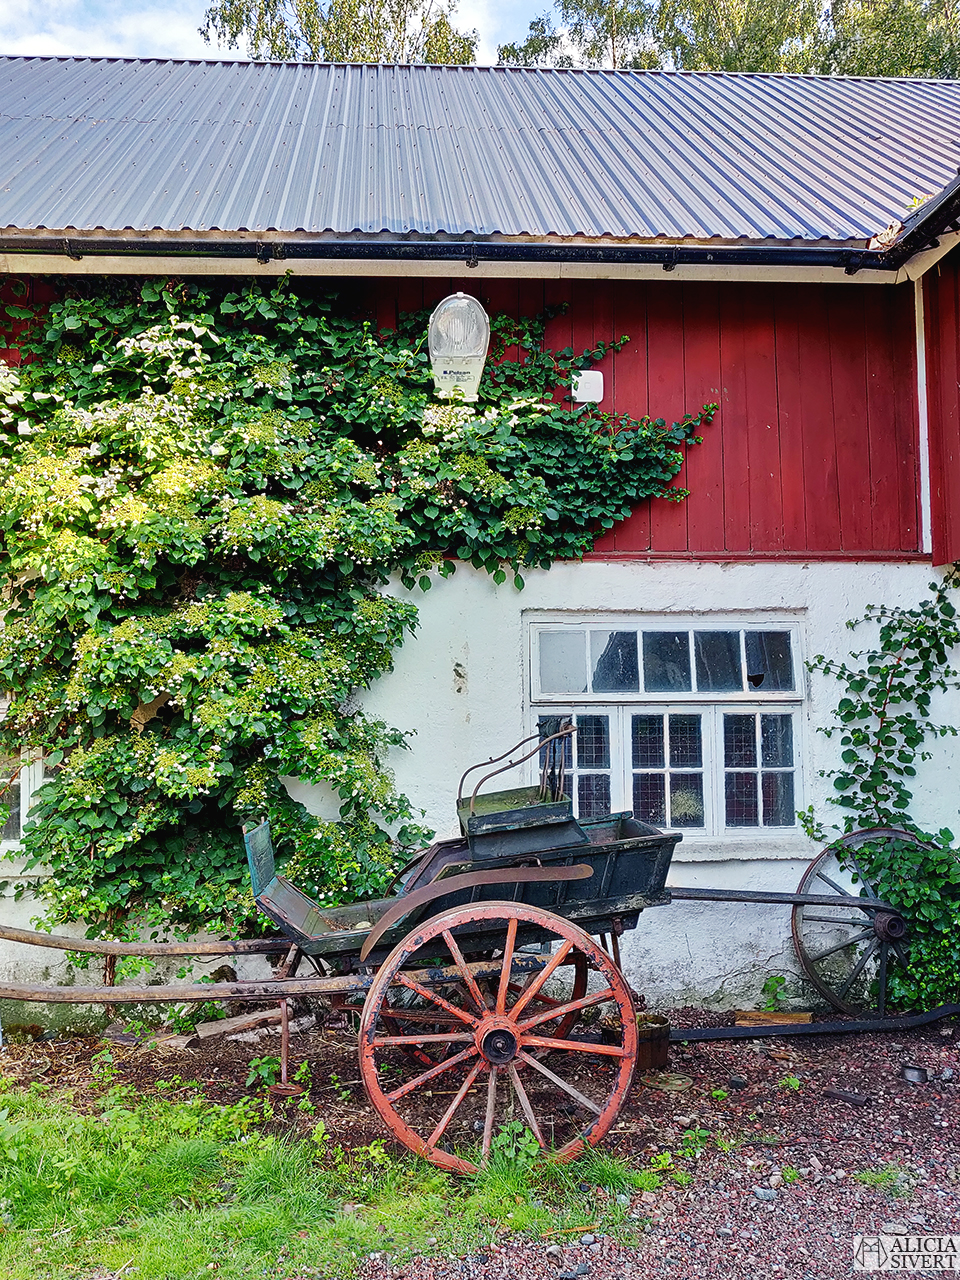 Vagn mot ladugård, Norrängens alpackagård - www.aliciasivert.se